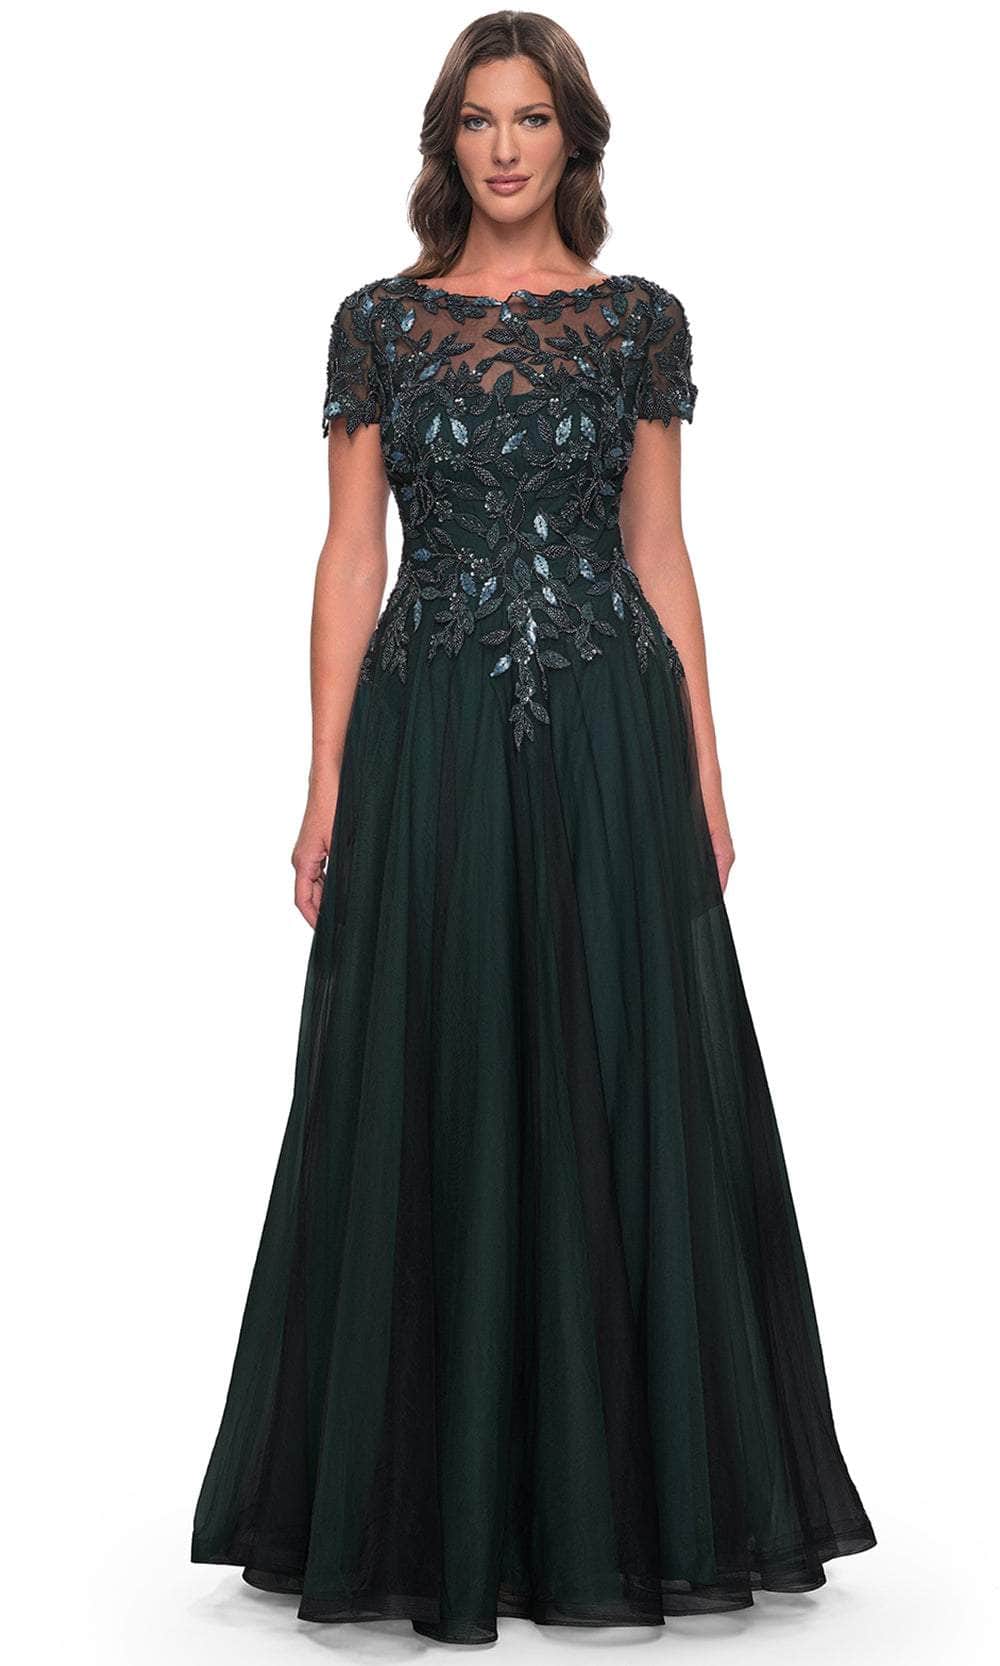 La Femme 31267 - Floral Sequin Formal Dress Evening Dresses 4 / Black/Emerald